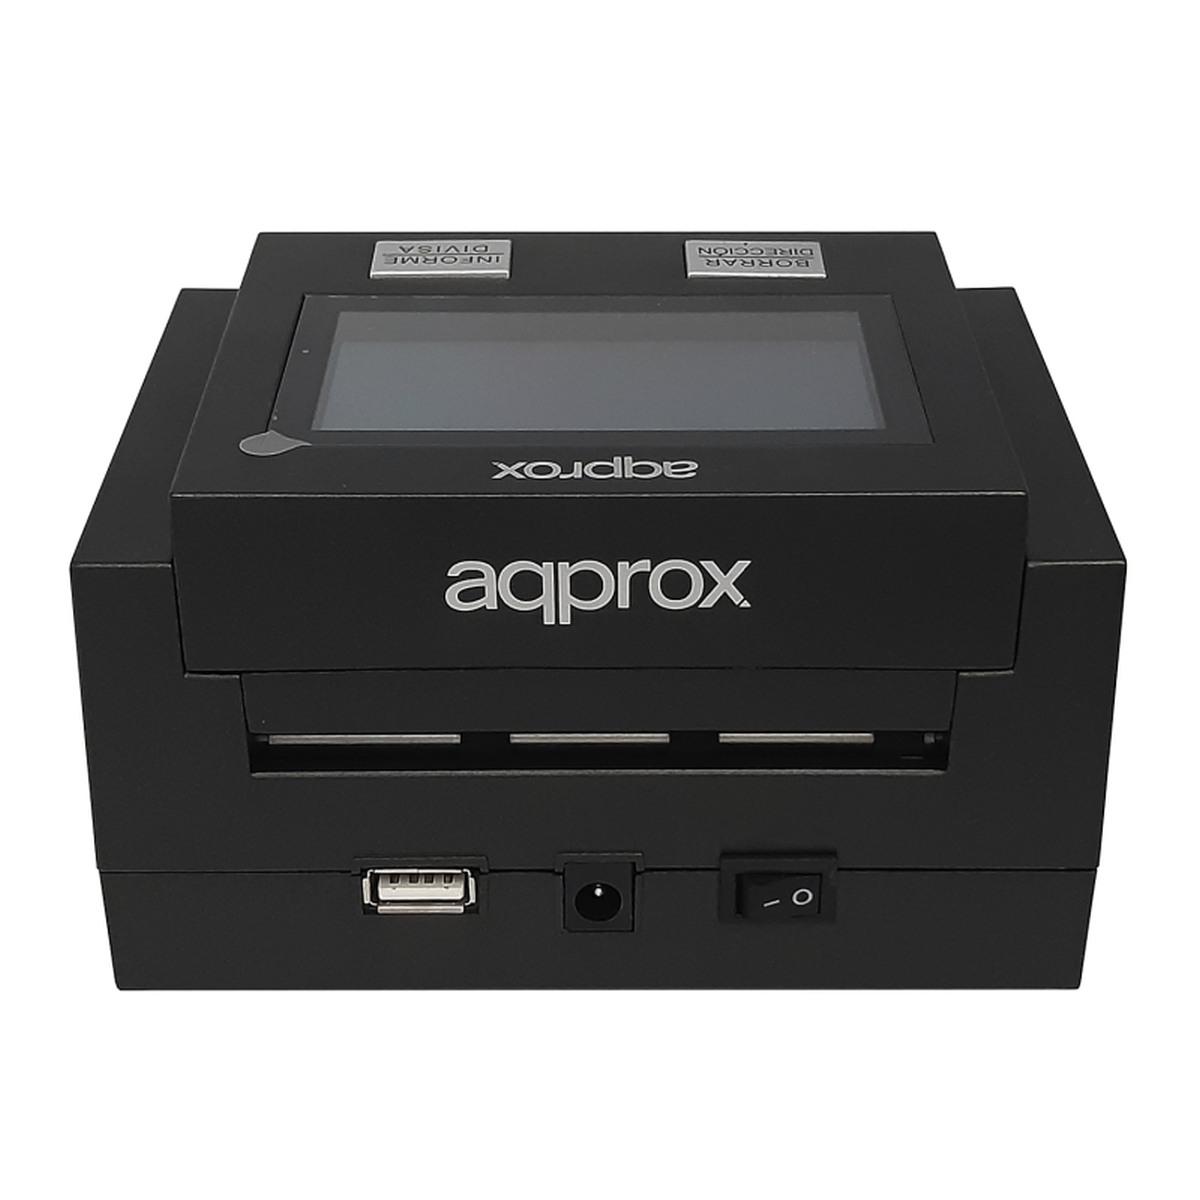 Rilevatore di banconote false APPROX - 7 sistemi di verifica - Rilevamento, conteggio per valore e tipo - Schermo LCD